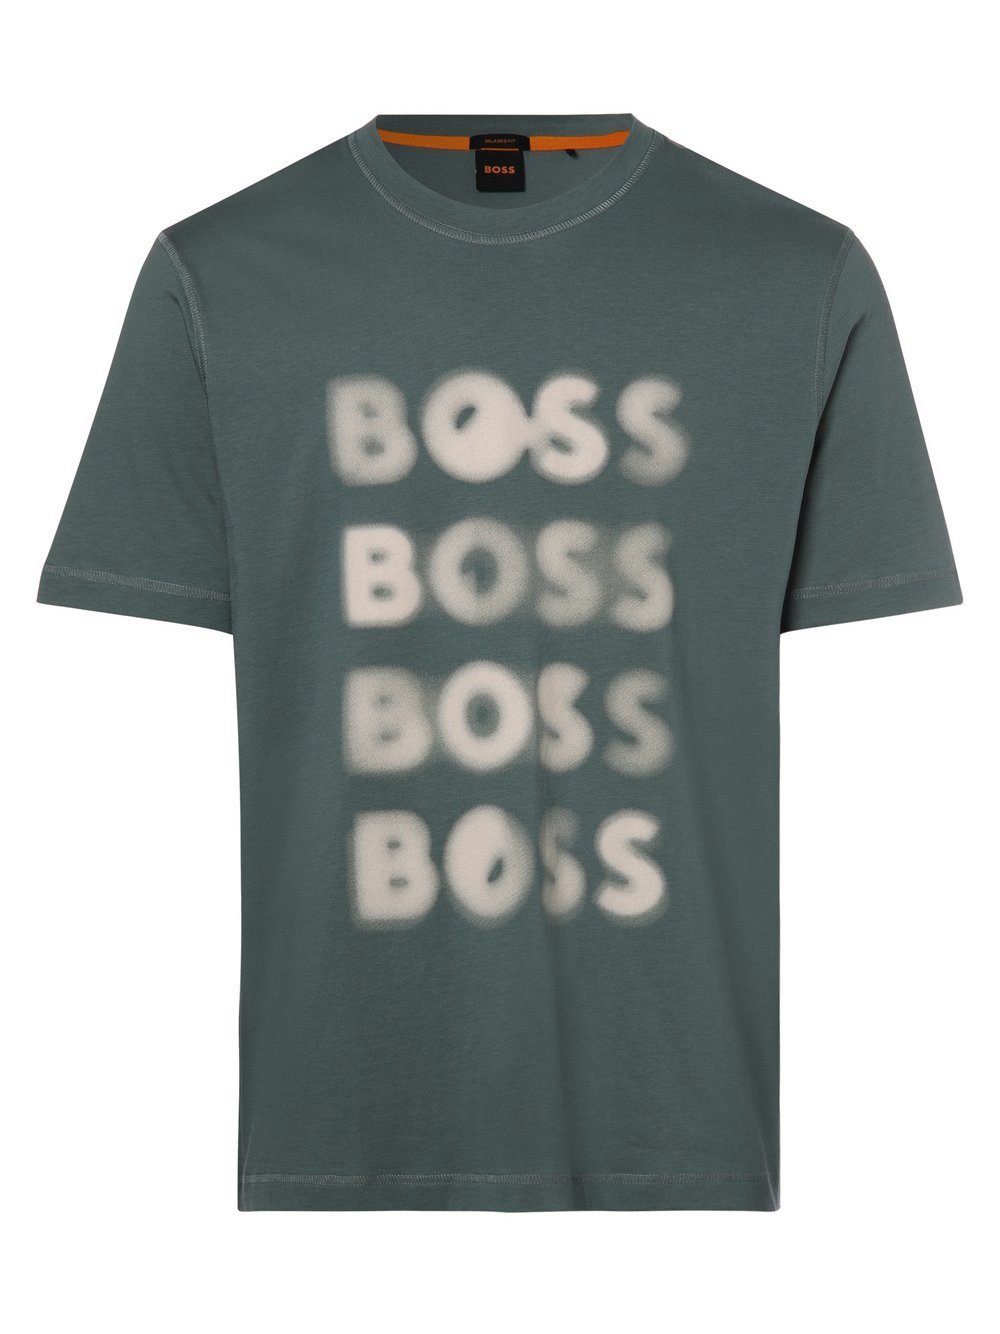 BOSS Orange - T-shirt męski – Teetrury 2, zielony|niebieski